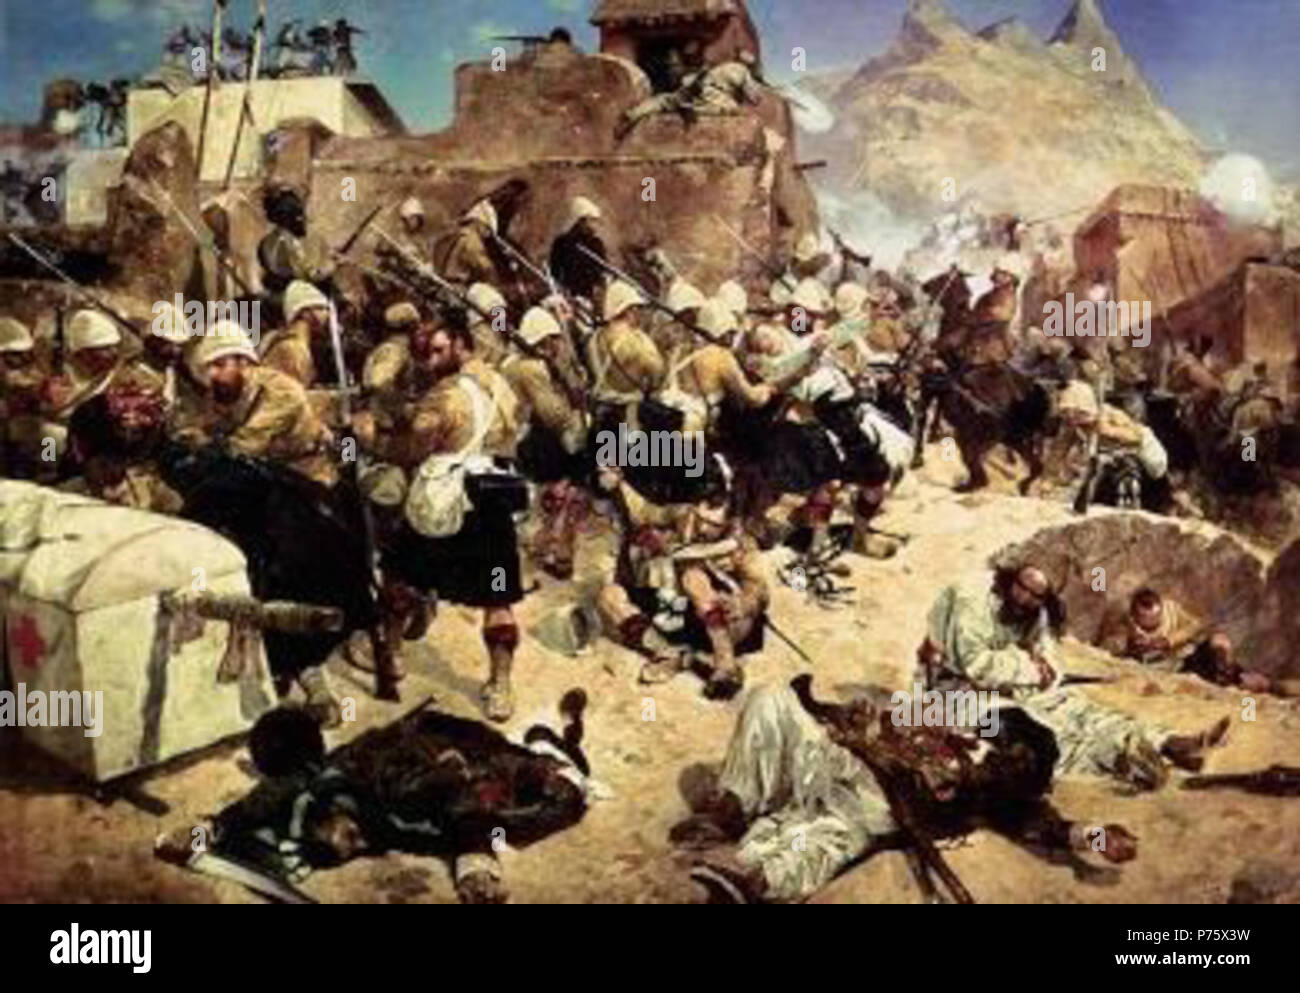 English: Second Anglo-Afghan War Polski: Druga wojna anglo-afgaska. Late 19th century 150 Kandahar 92nd Highlanders Stock Photo